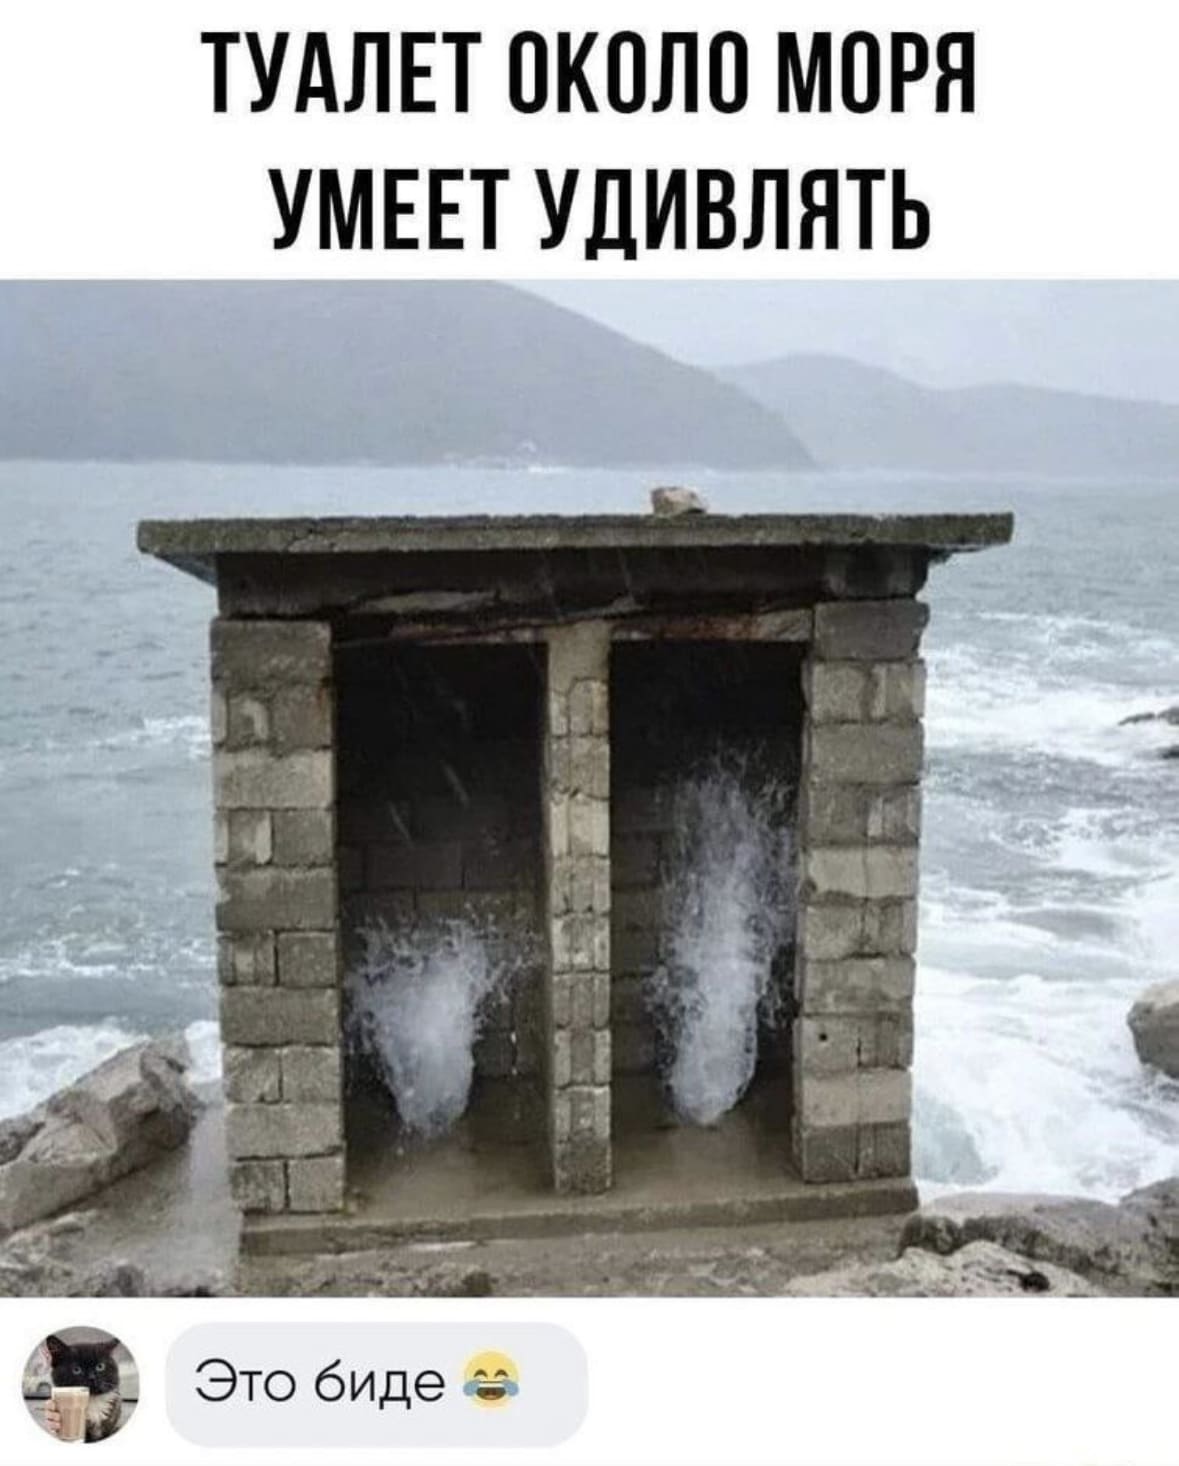 *Туалет около моря умеет удивлять*
— Это биде.